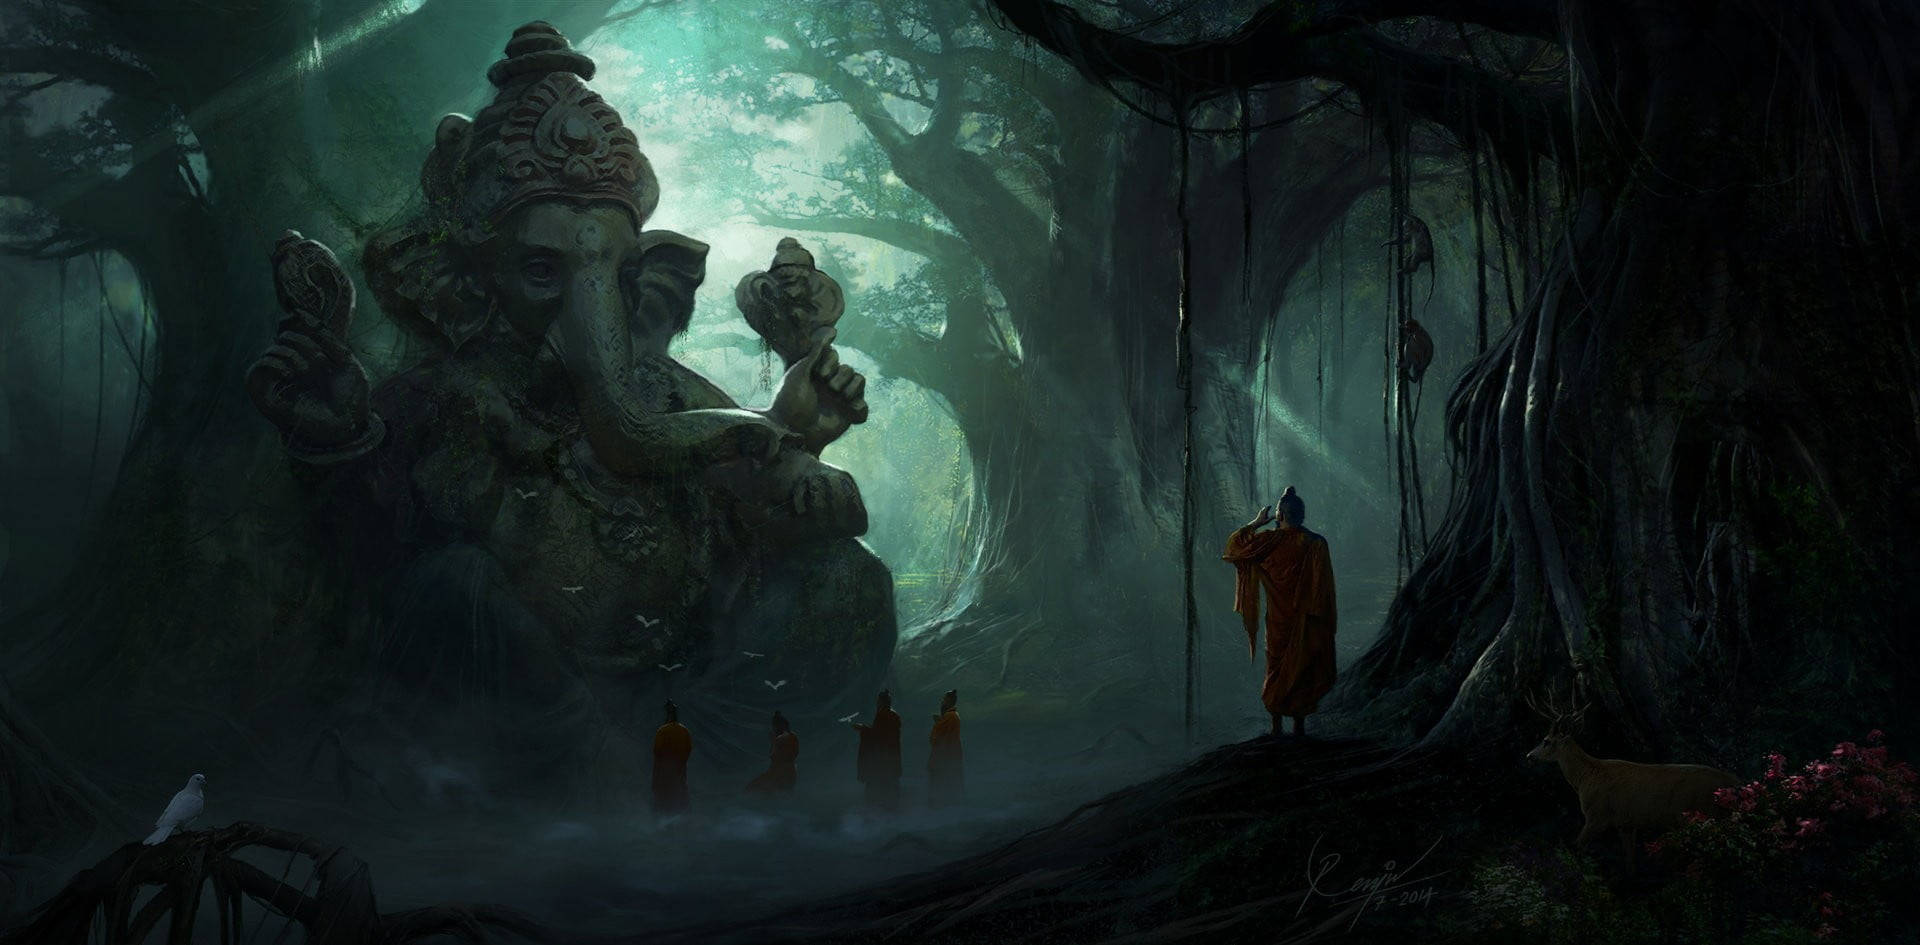 Ganeshji Hd Skogsförbundare. Wallpaper